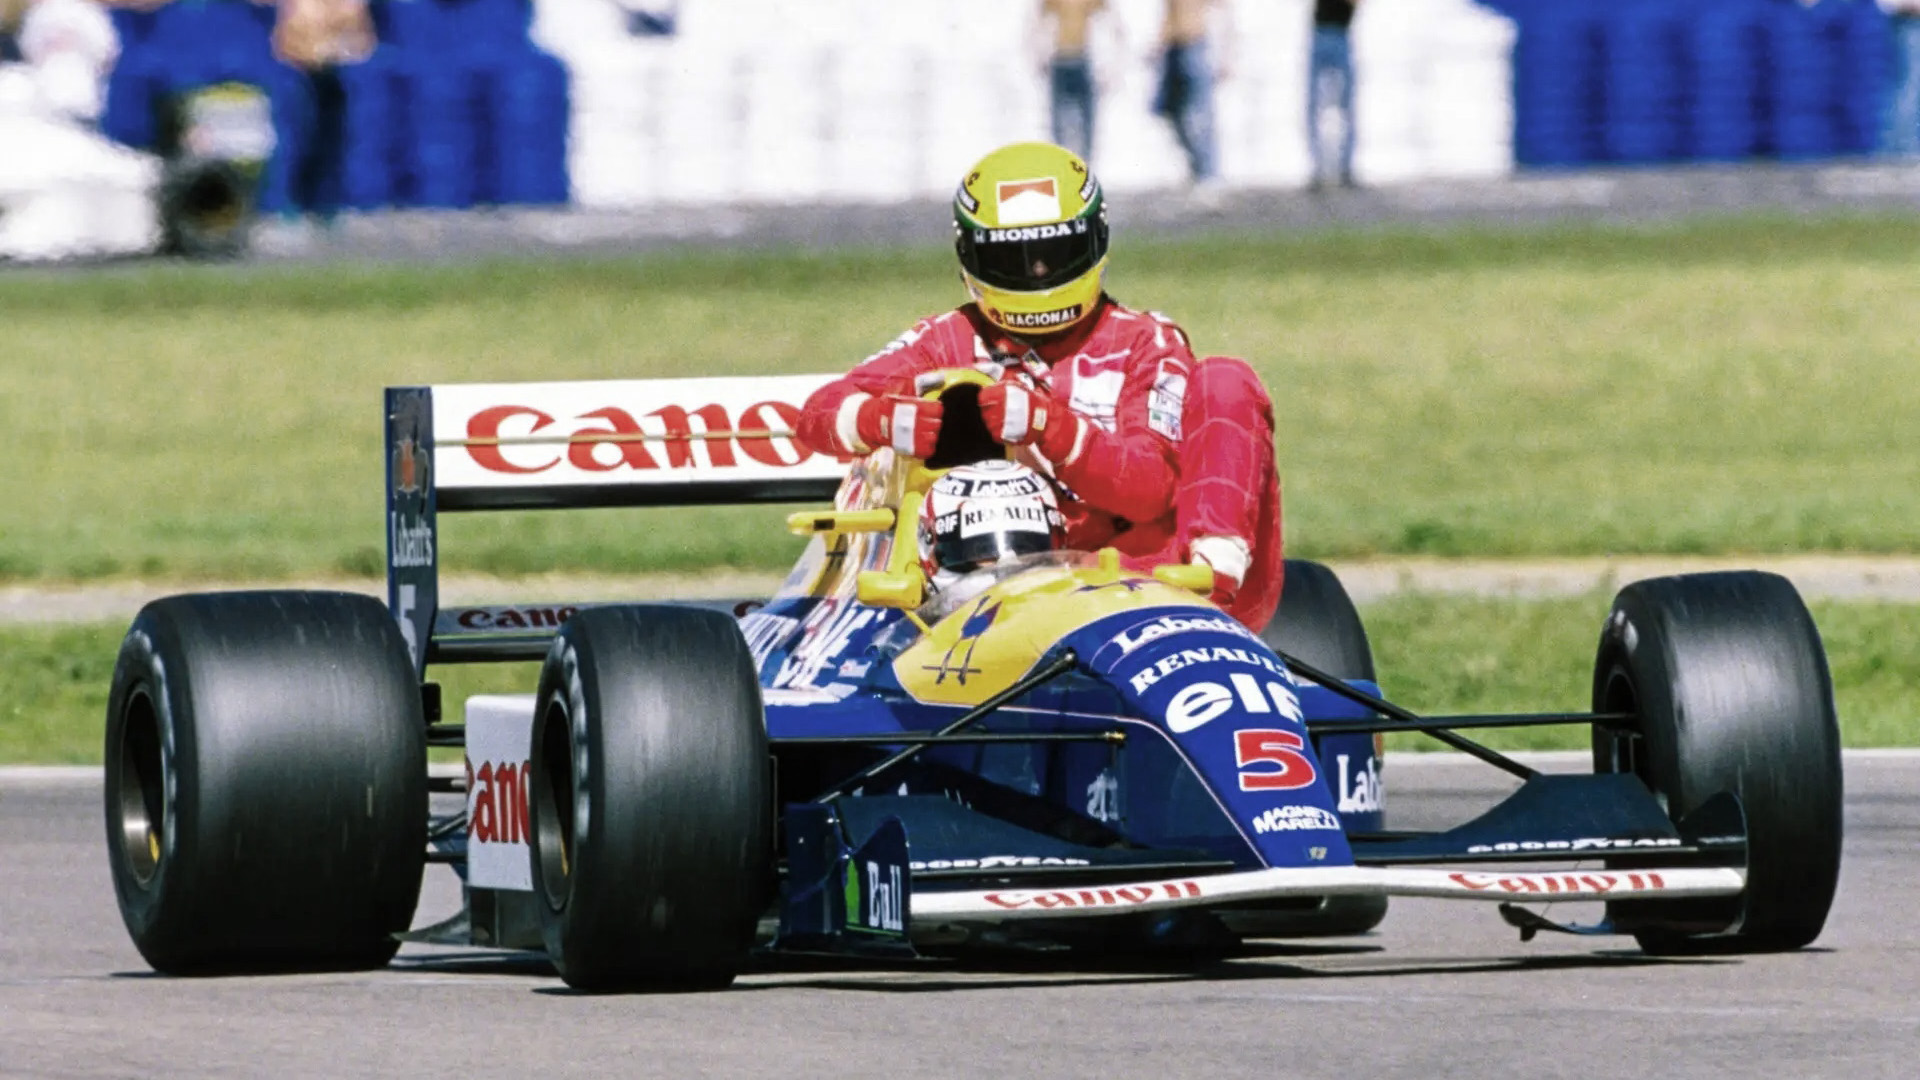 Nigel Mansell llevando a su rival, Ayrton Senna, hasta los boxes de Silverstone. Ese Williams FW14 fue uno de los autos subastados en Mónaco